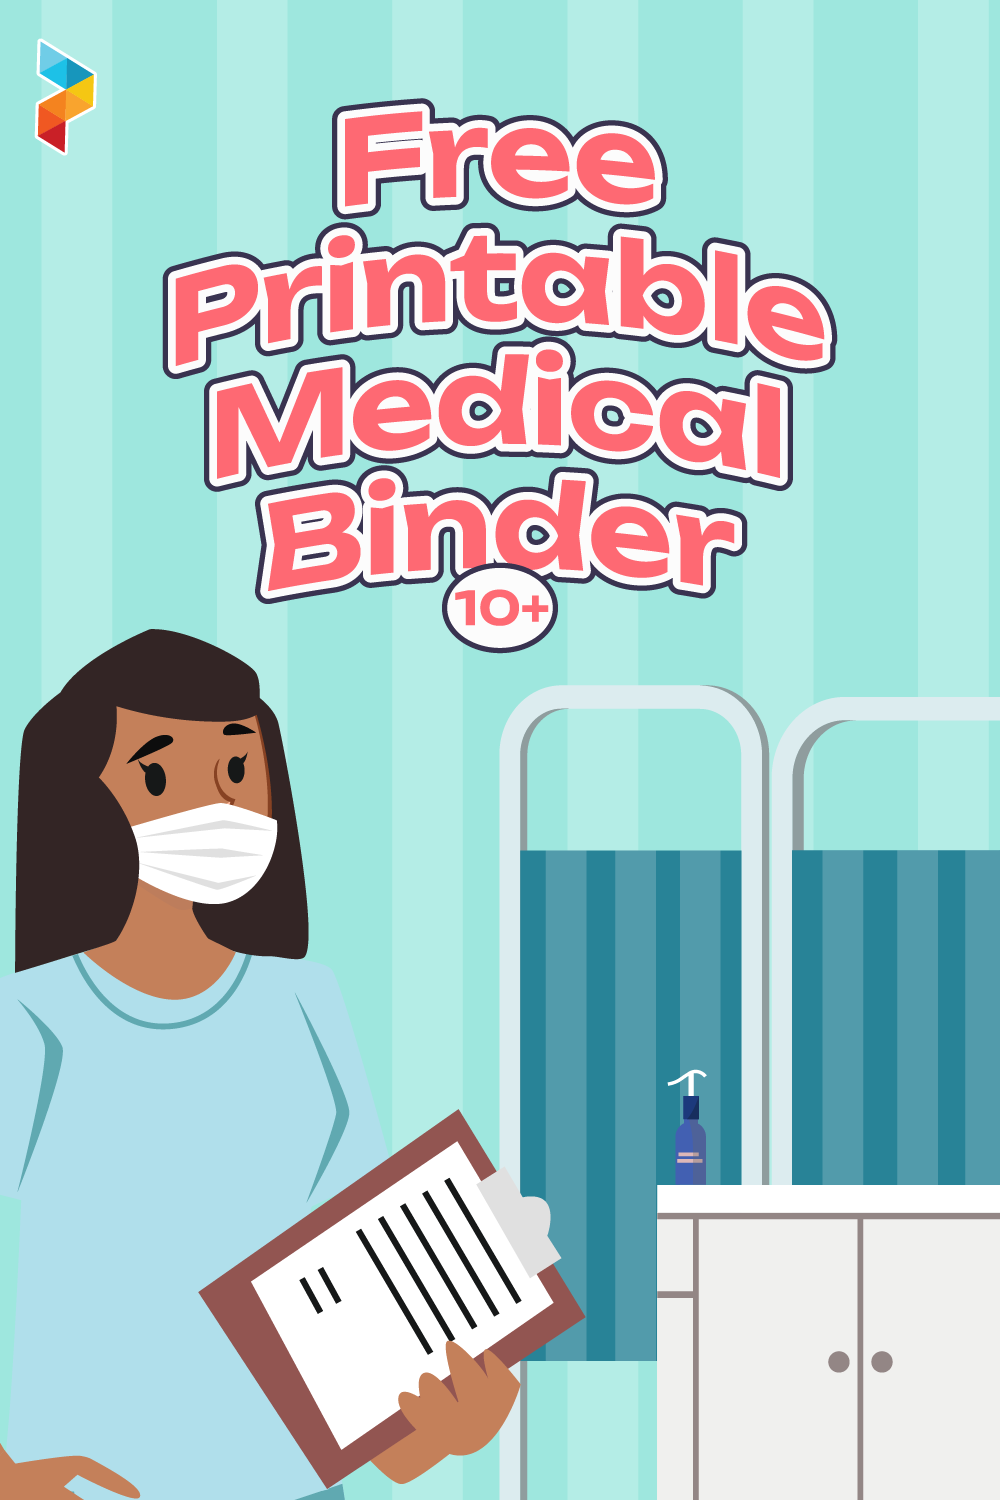 Medical Binder